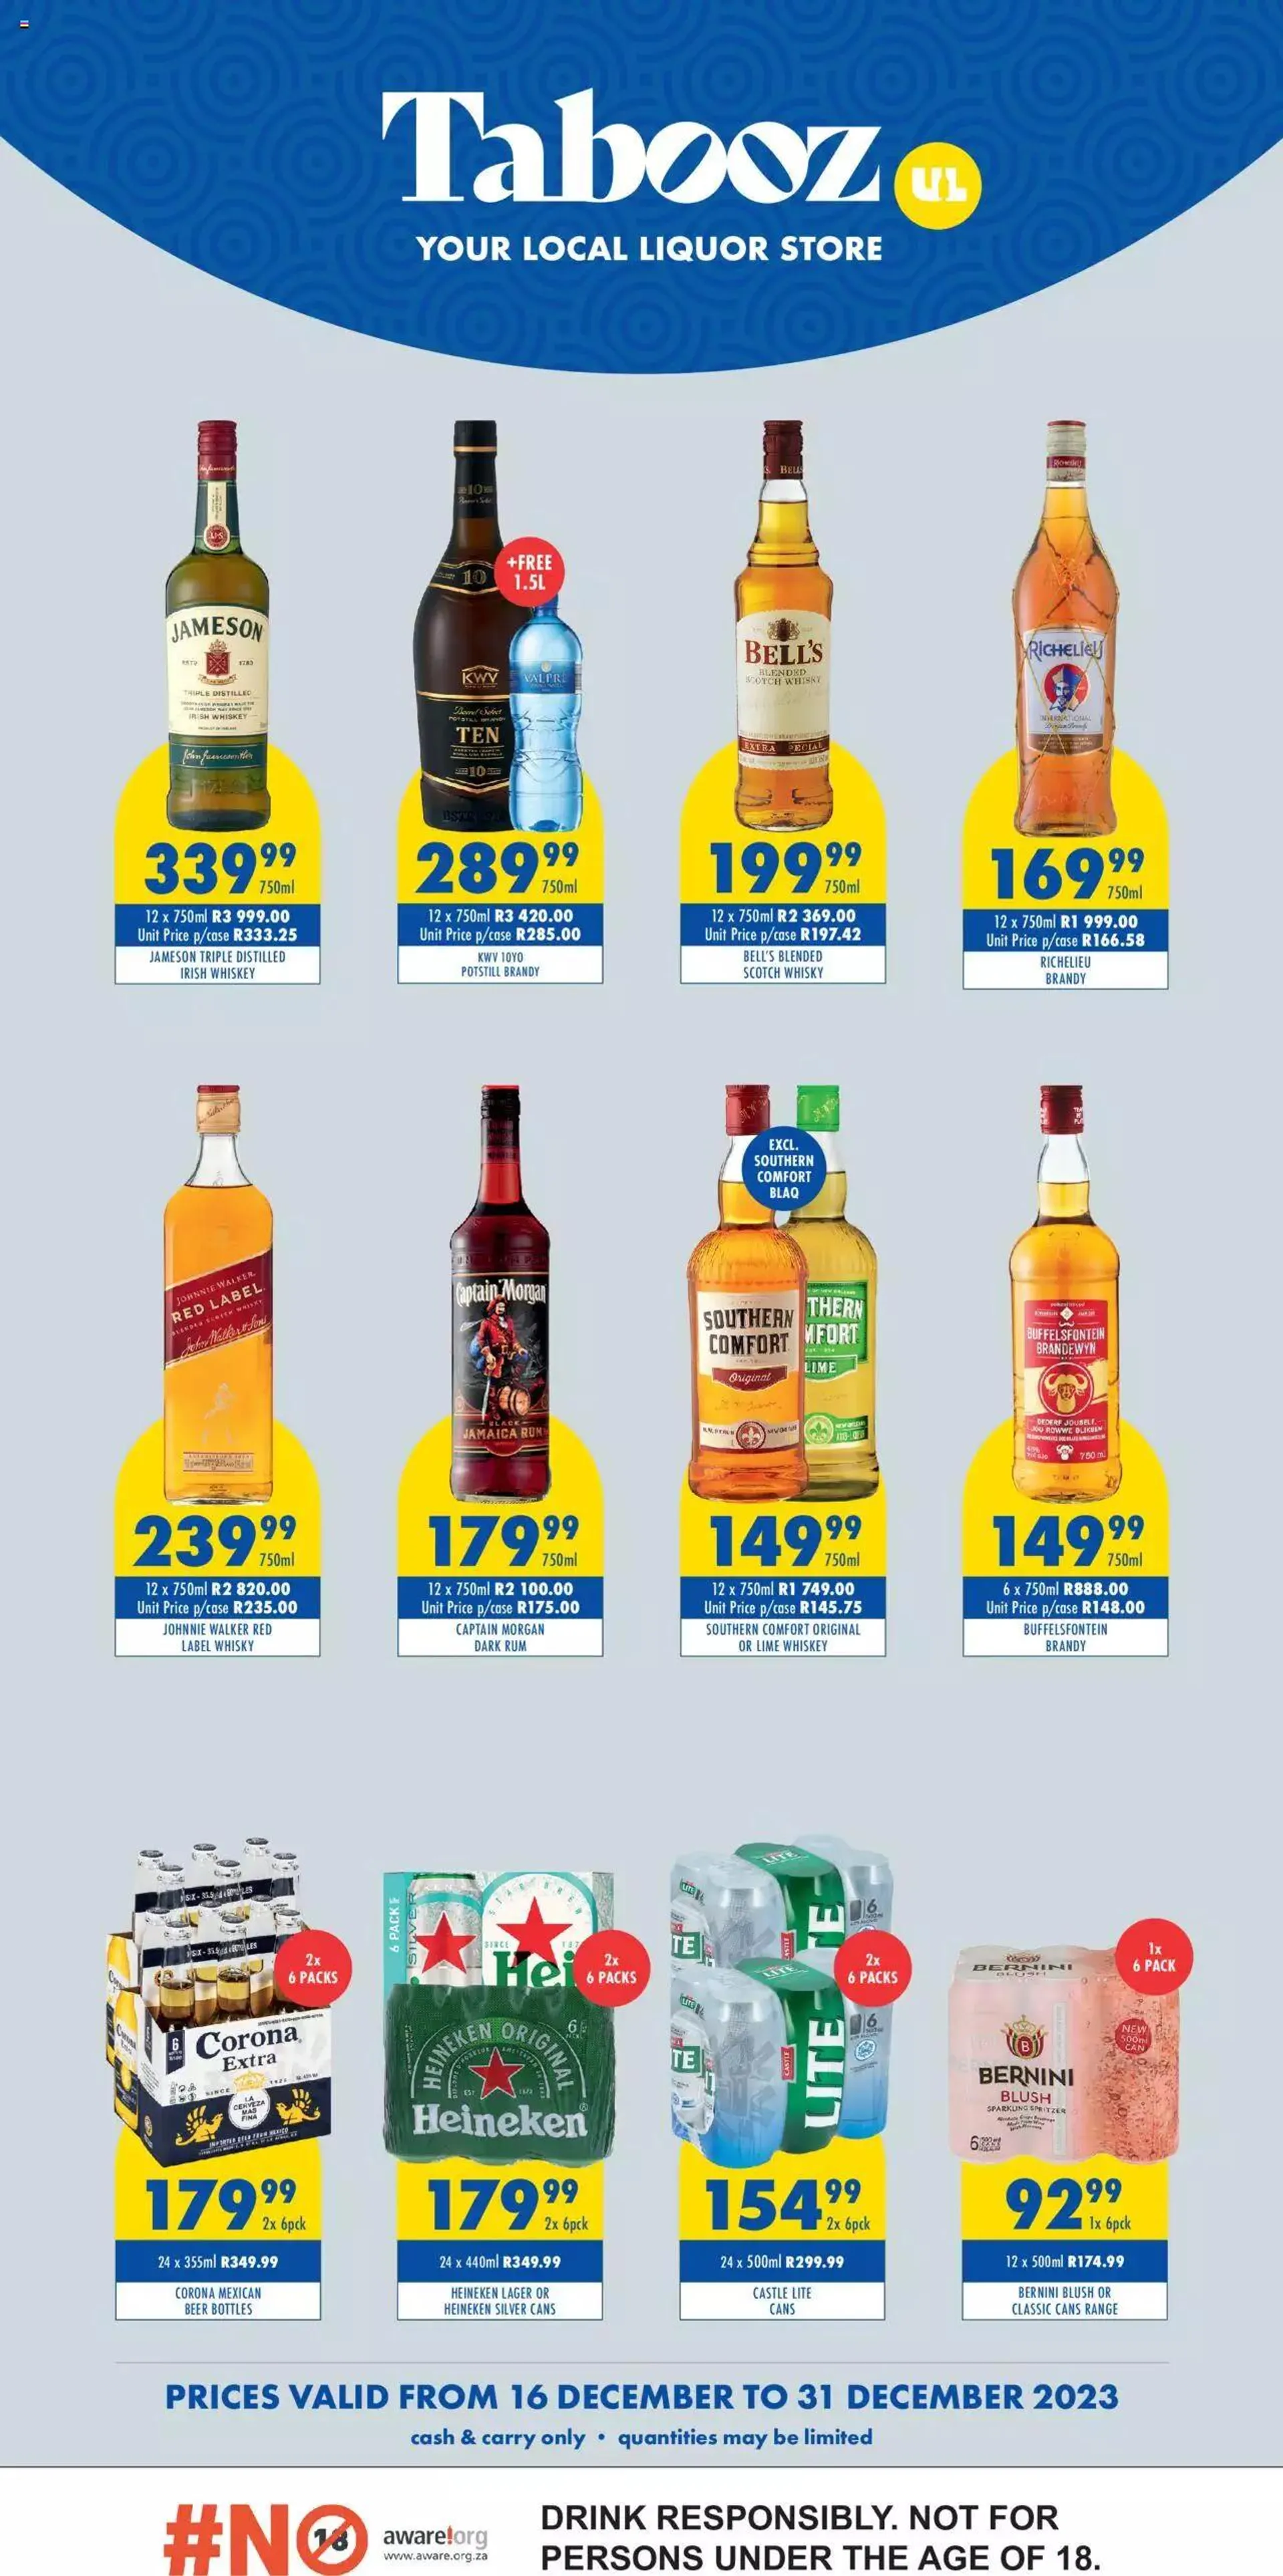 Ultra Liquors - Tabooz Specials - 16 December 31 December 2023